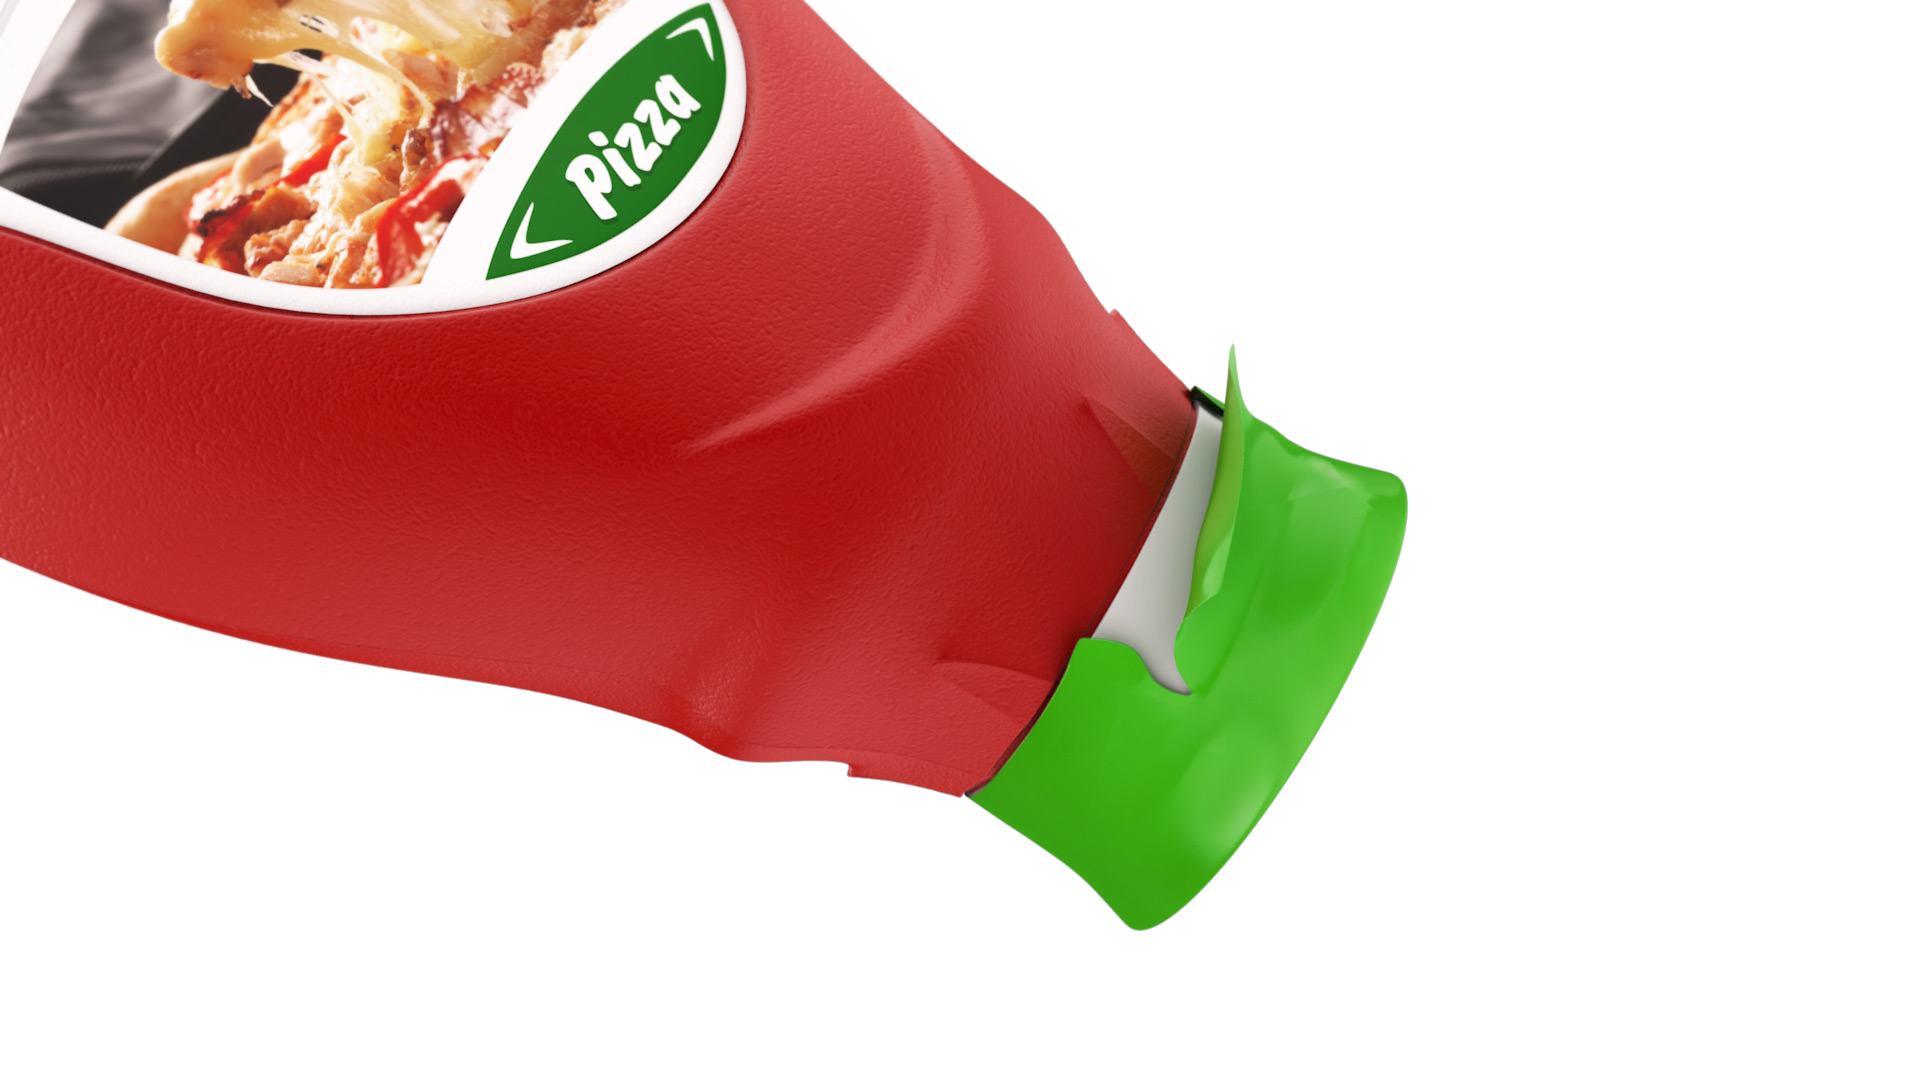 Vital tomato ketchup packaging design - bottle foil